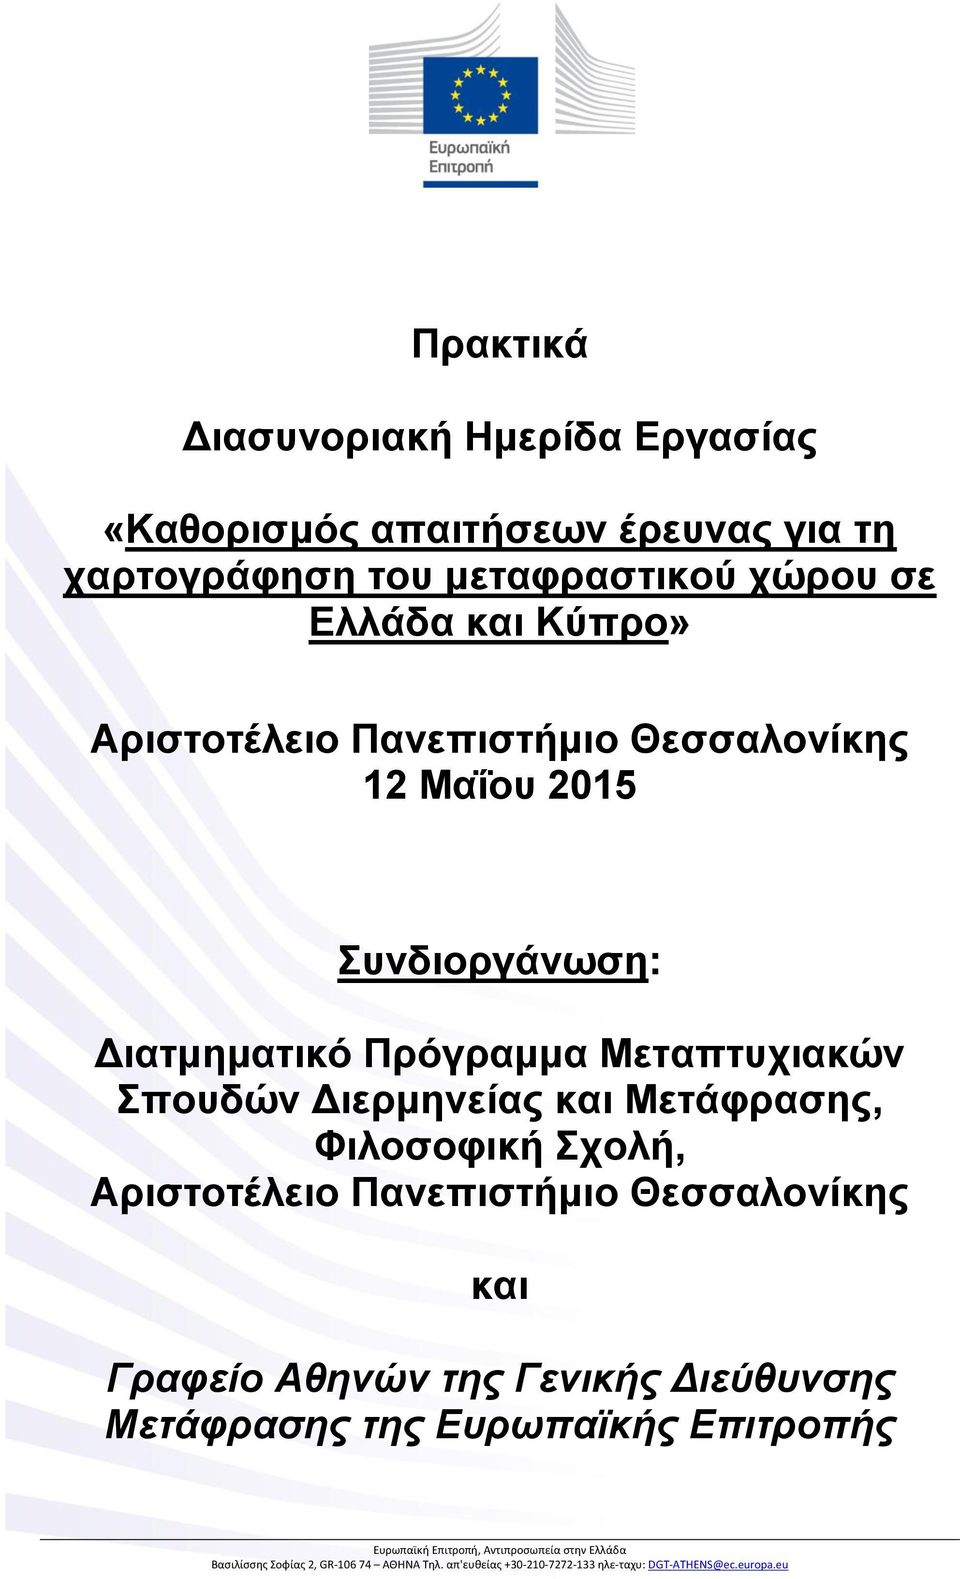 Μετάφρασης, Φιλοσοφική Σχολή, Αριστοτέλειο Πανεπιστήμιο Θεσσαλονίκης και Γραφείο Αθηνών της Γενικής Διεύθυνσης Μετάφρασης της Ευρωπαϊκής